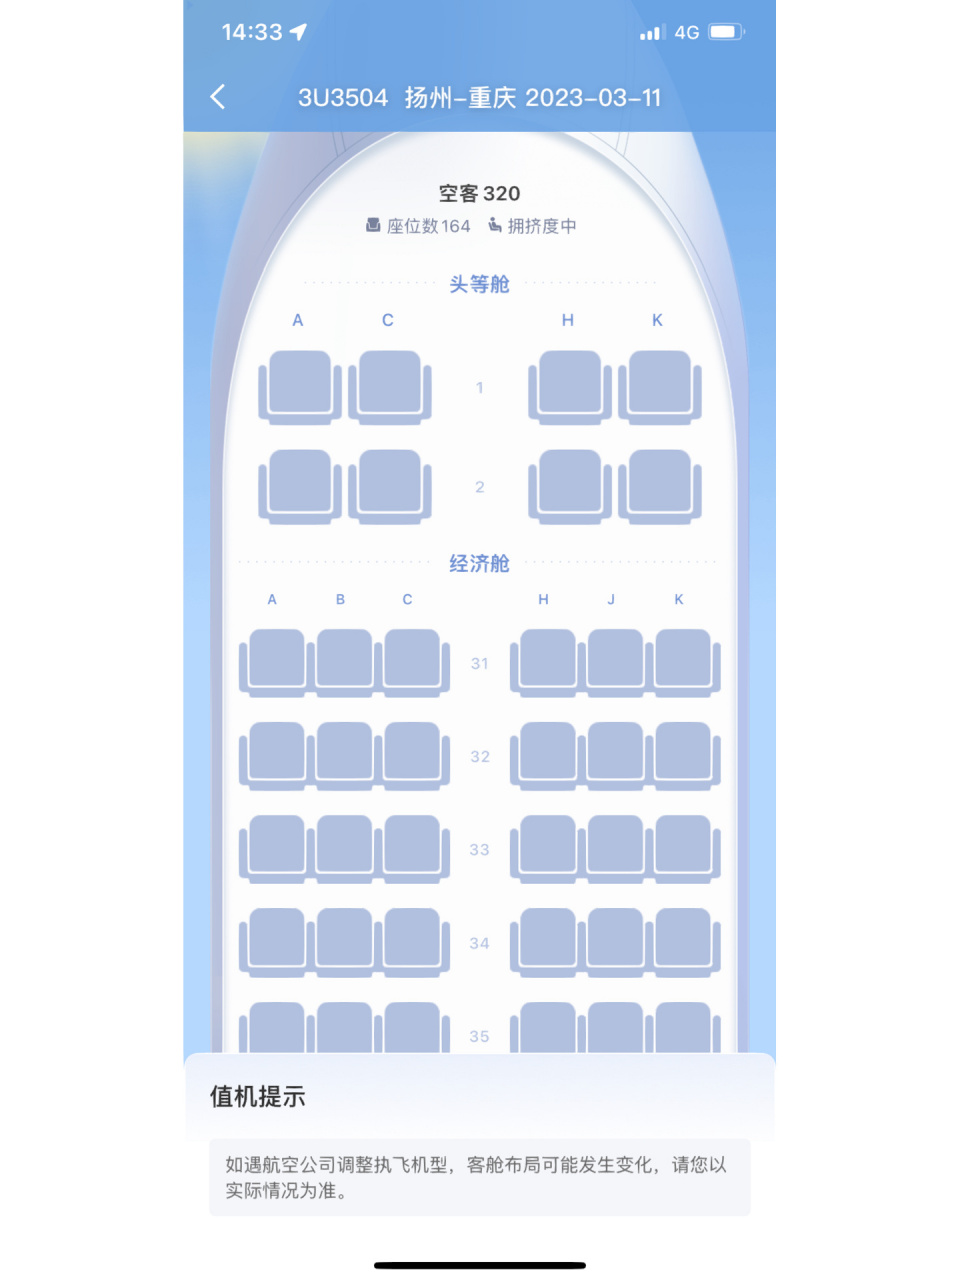 川航空客320选座 第一次坐飞机j姐妹们帮忙选选坐哪里比较合适想拍